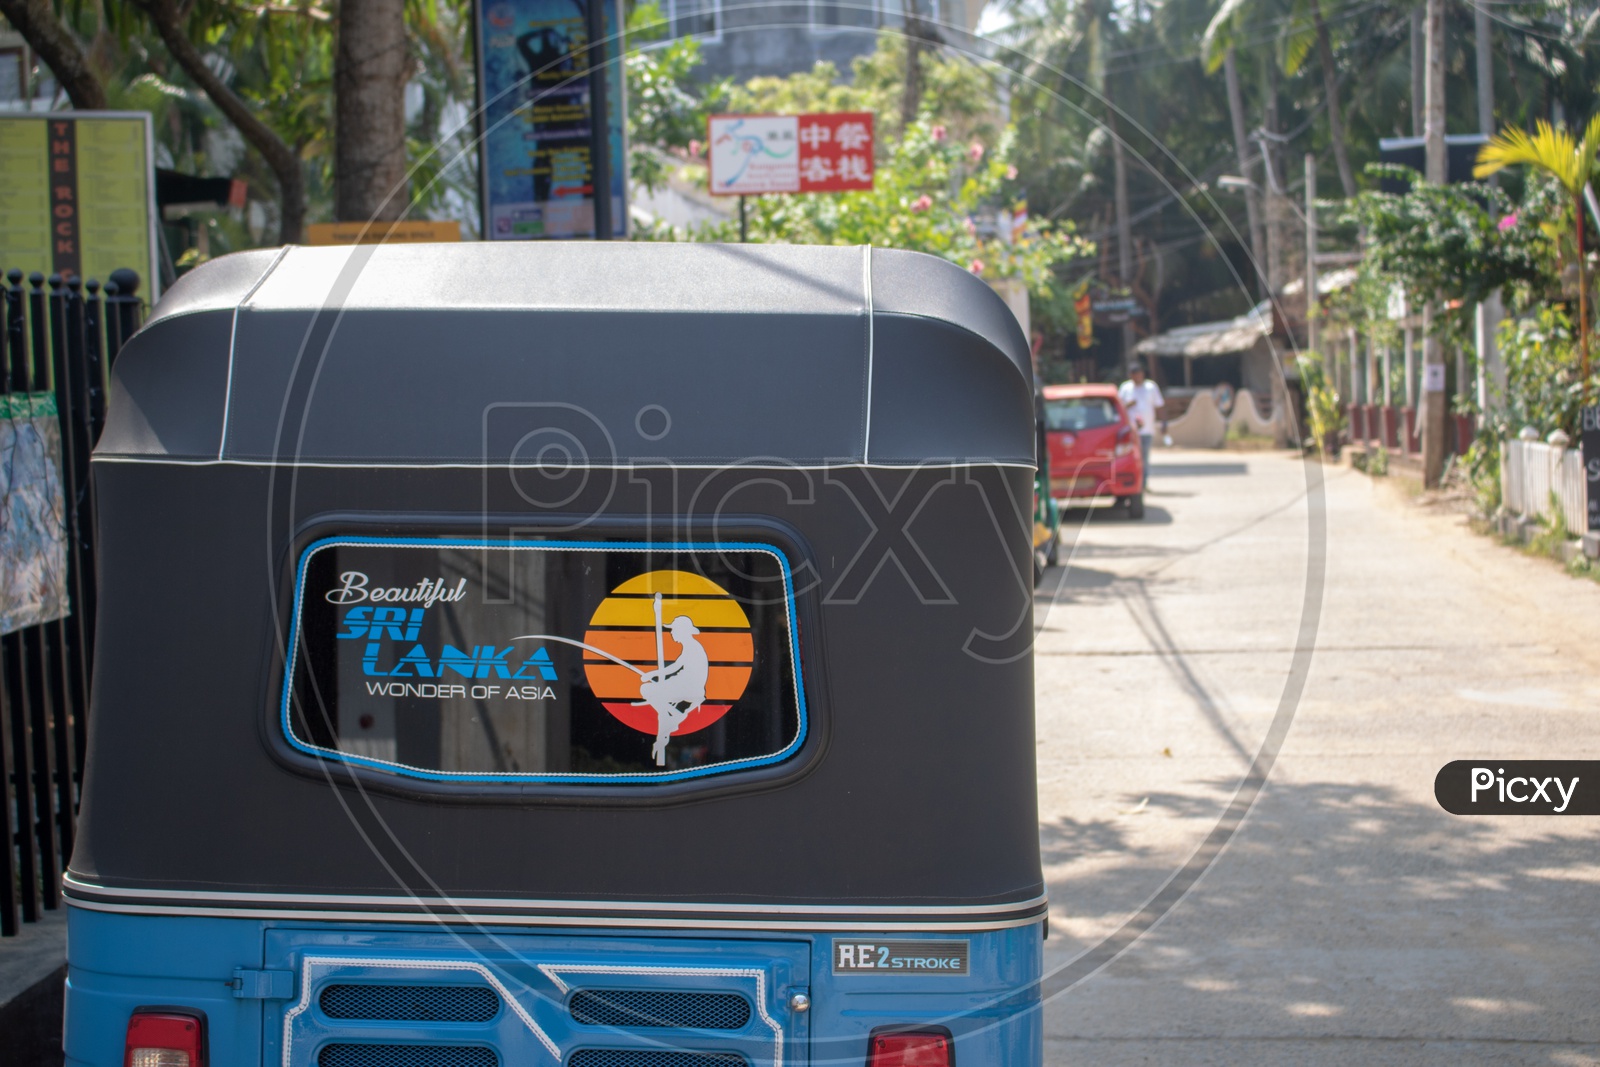 Auto/Tuk Tuk in Sri Lanka